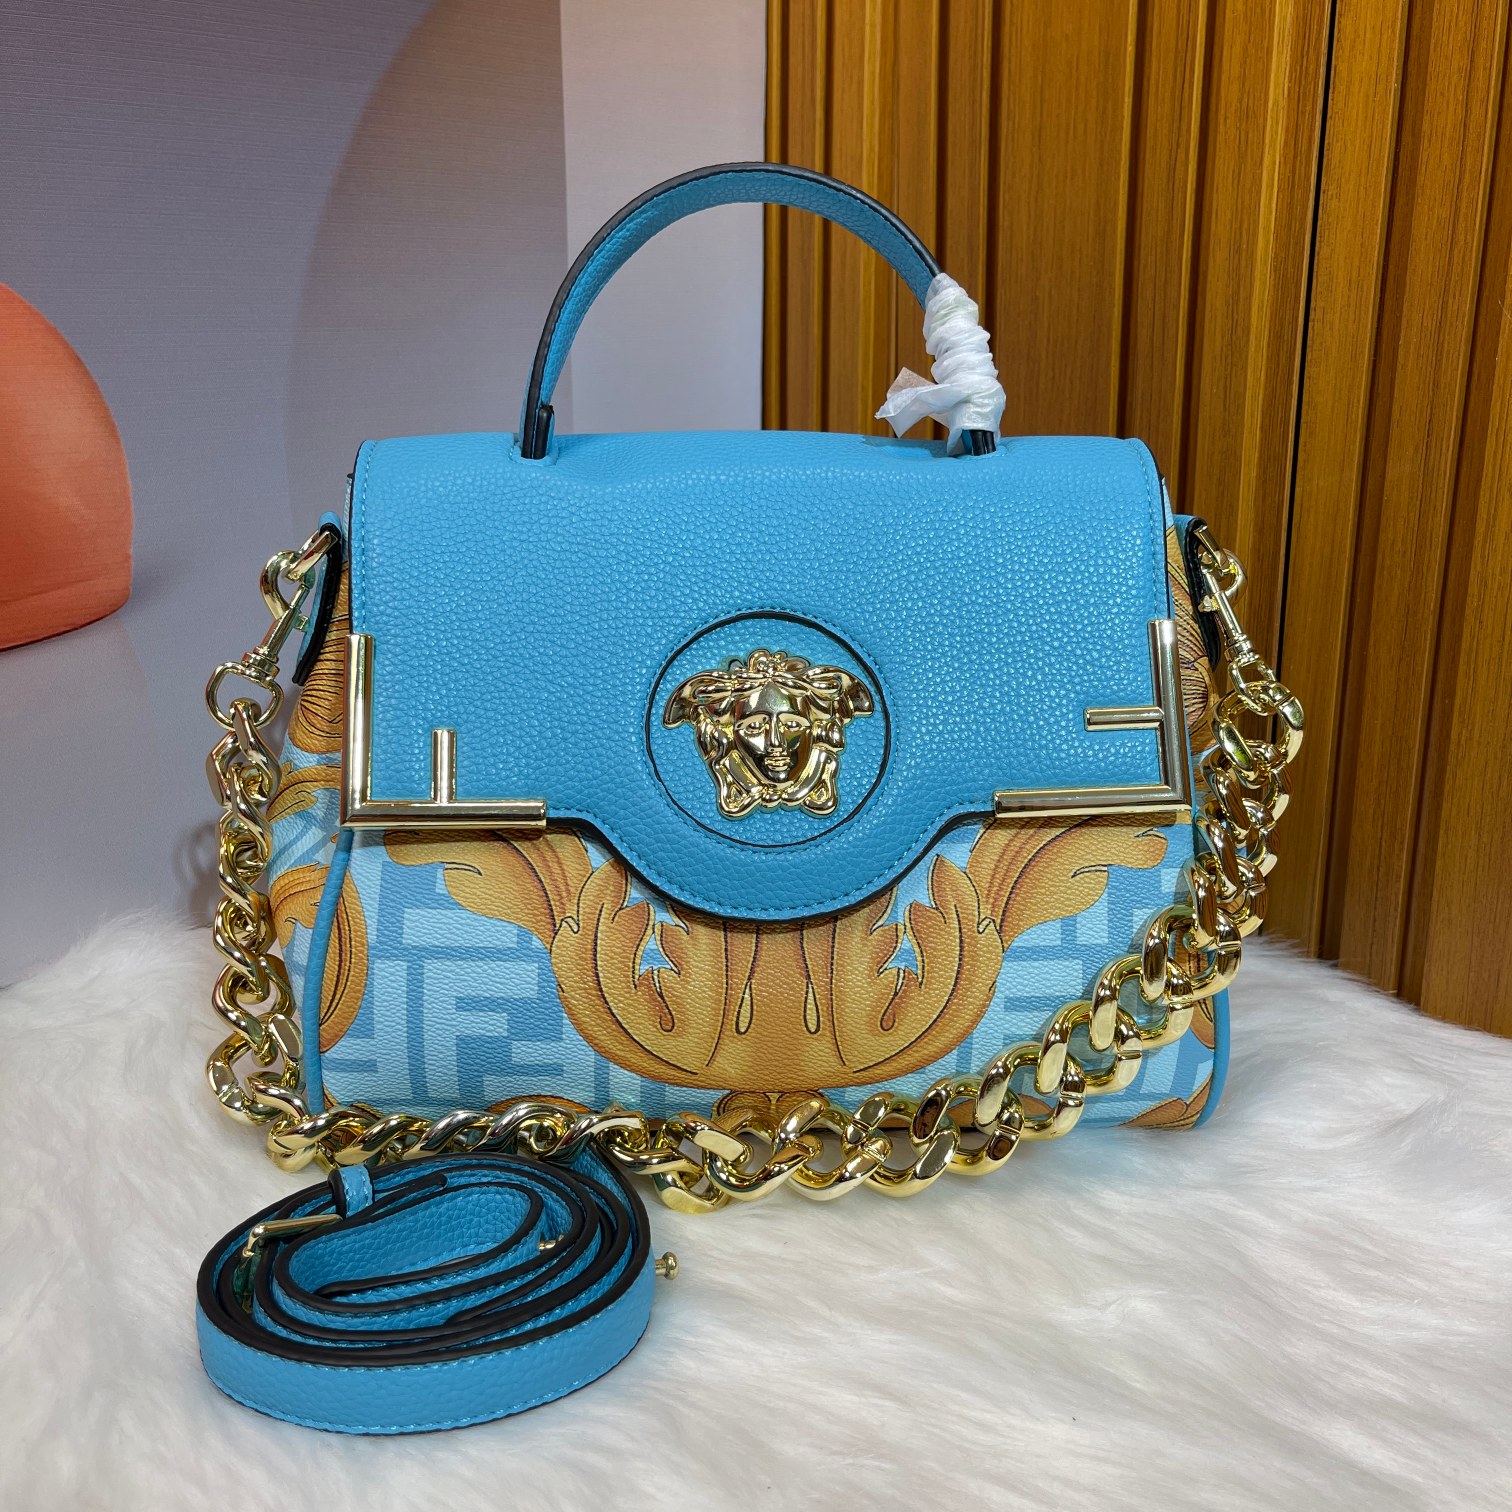 Versace La Medusa handbag